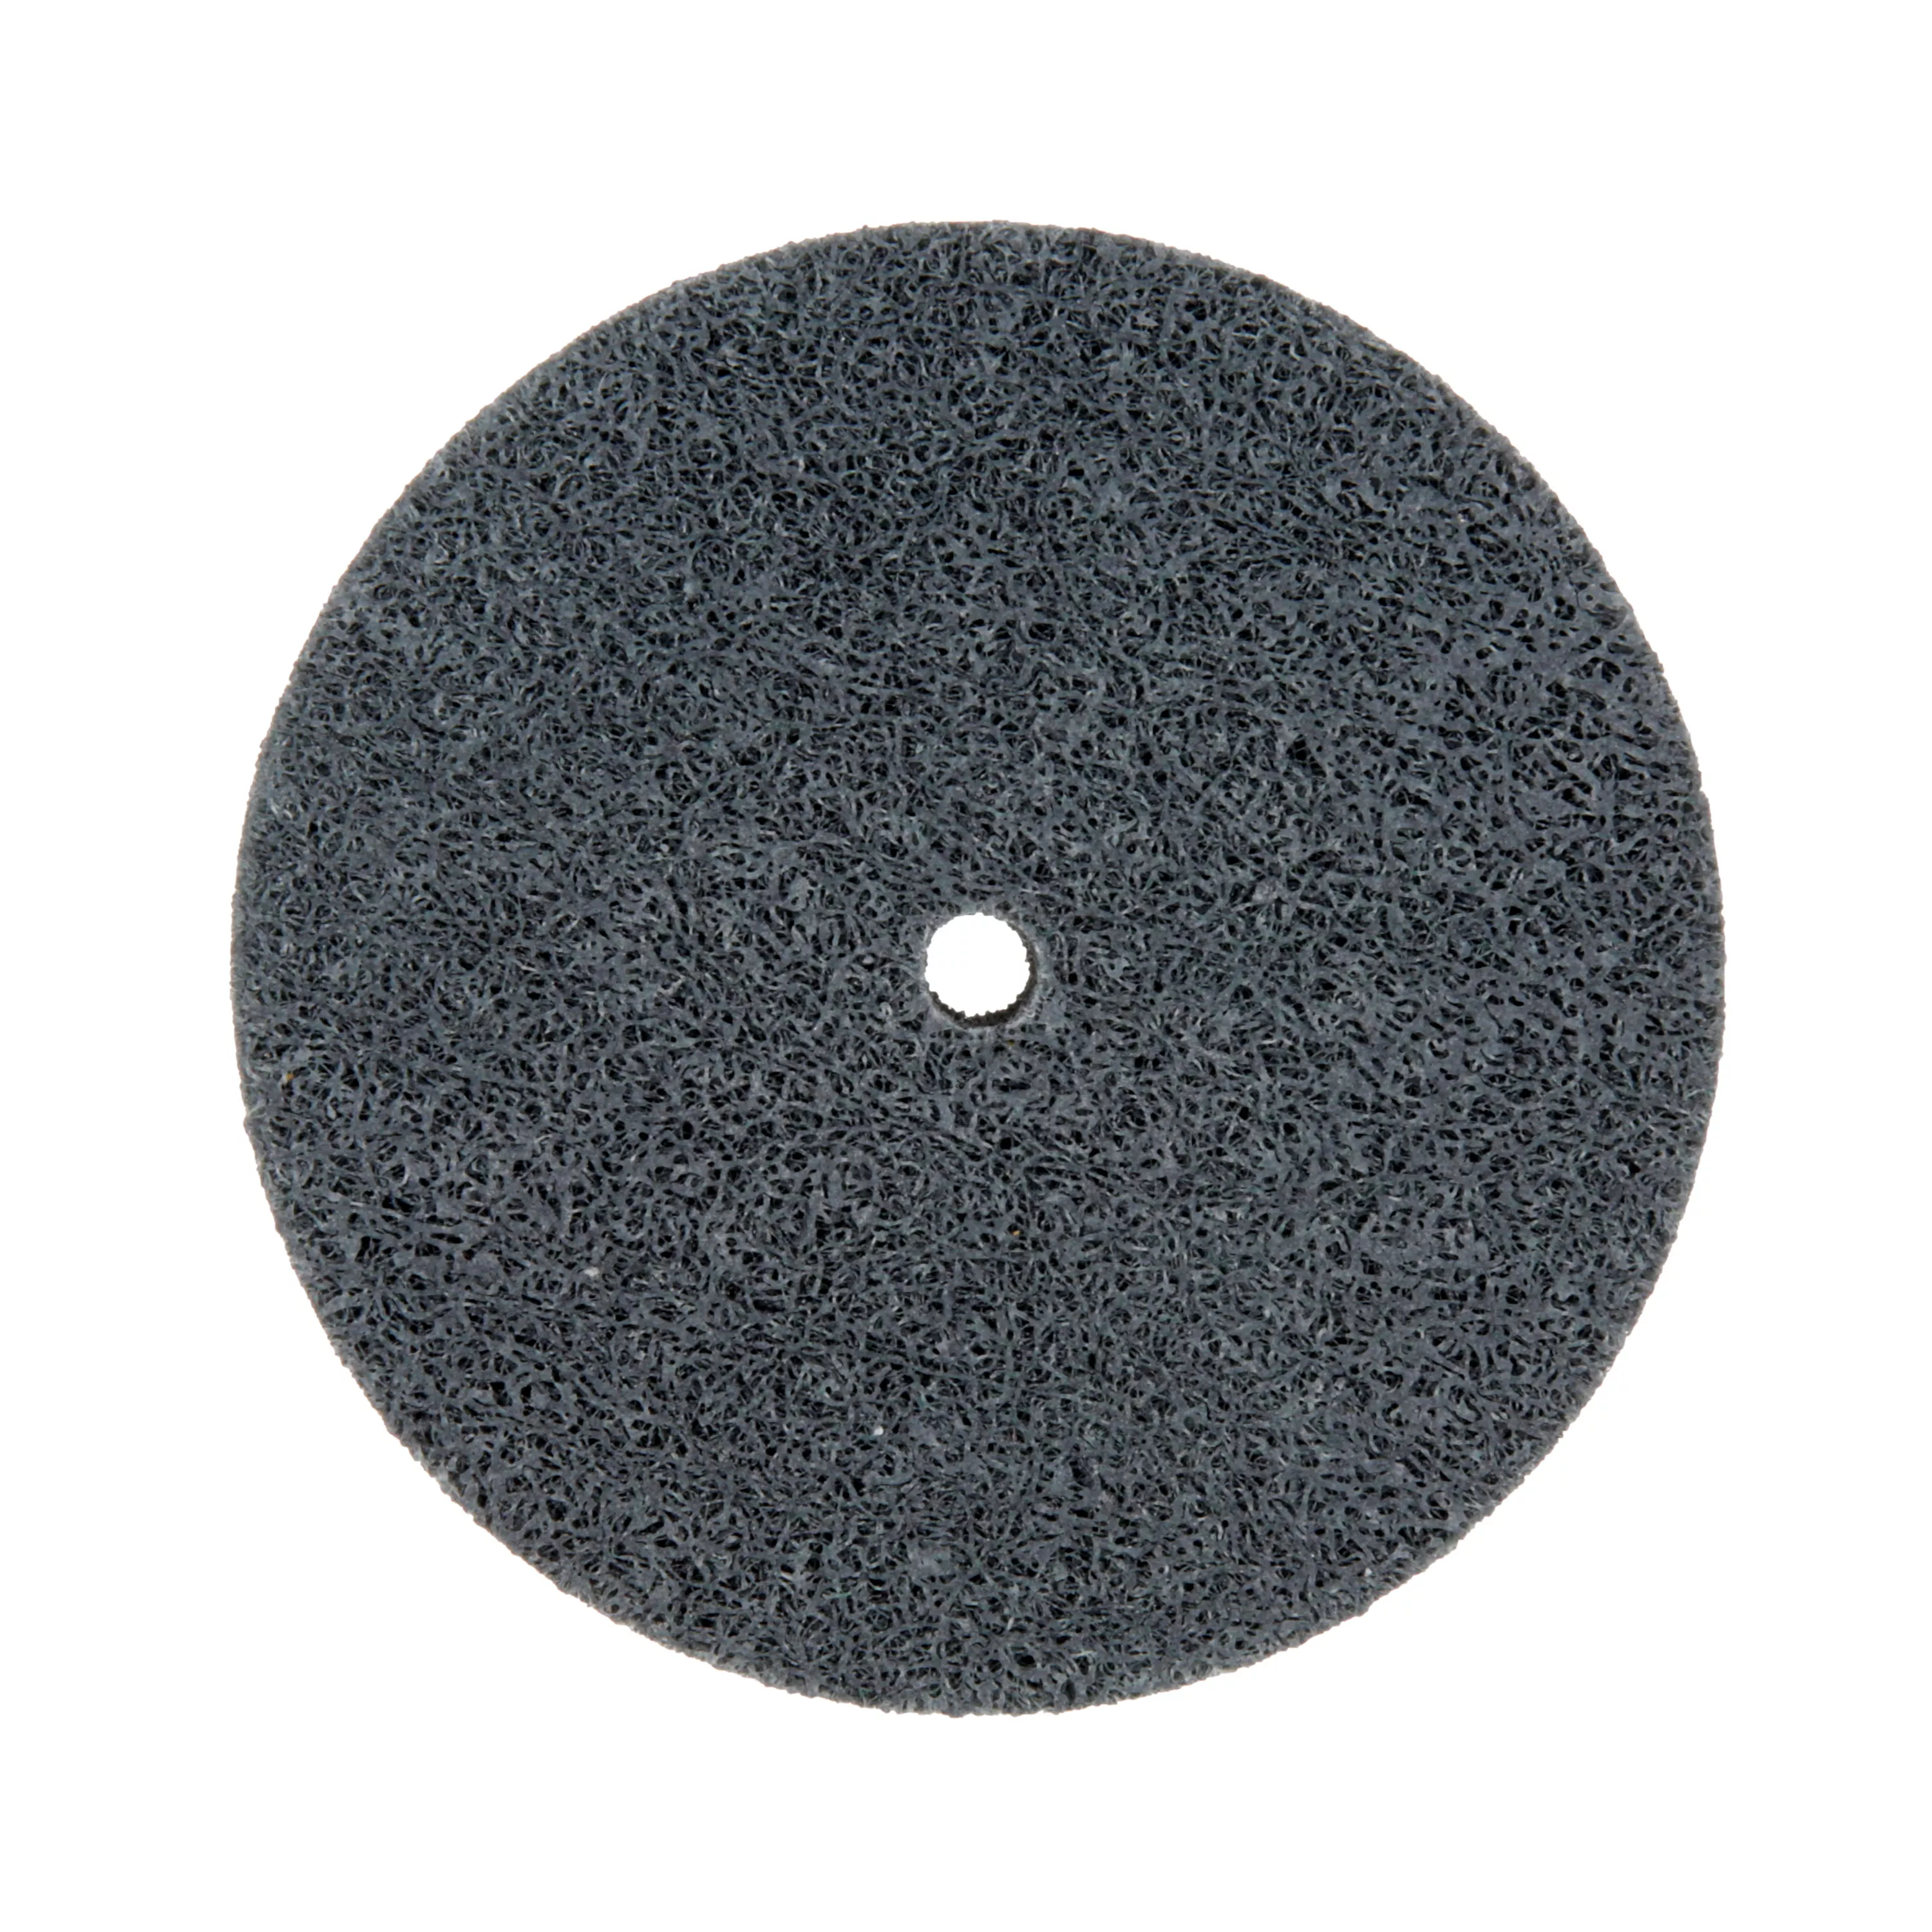 Standard Abrasives™ S/C Unitized Wheel 853240, 532 3 in x 1/2 in x 1/4
in, 10 ea/Case